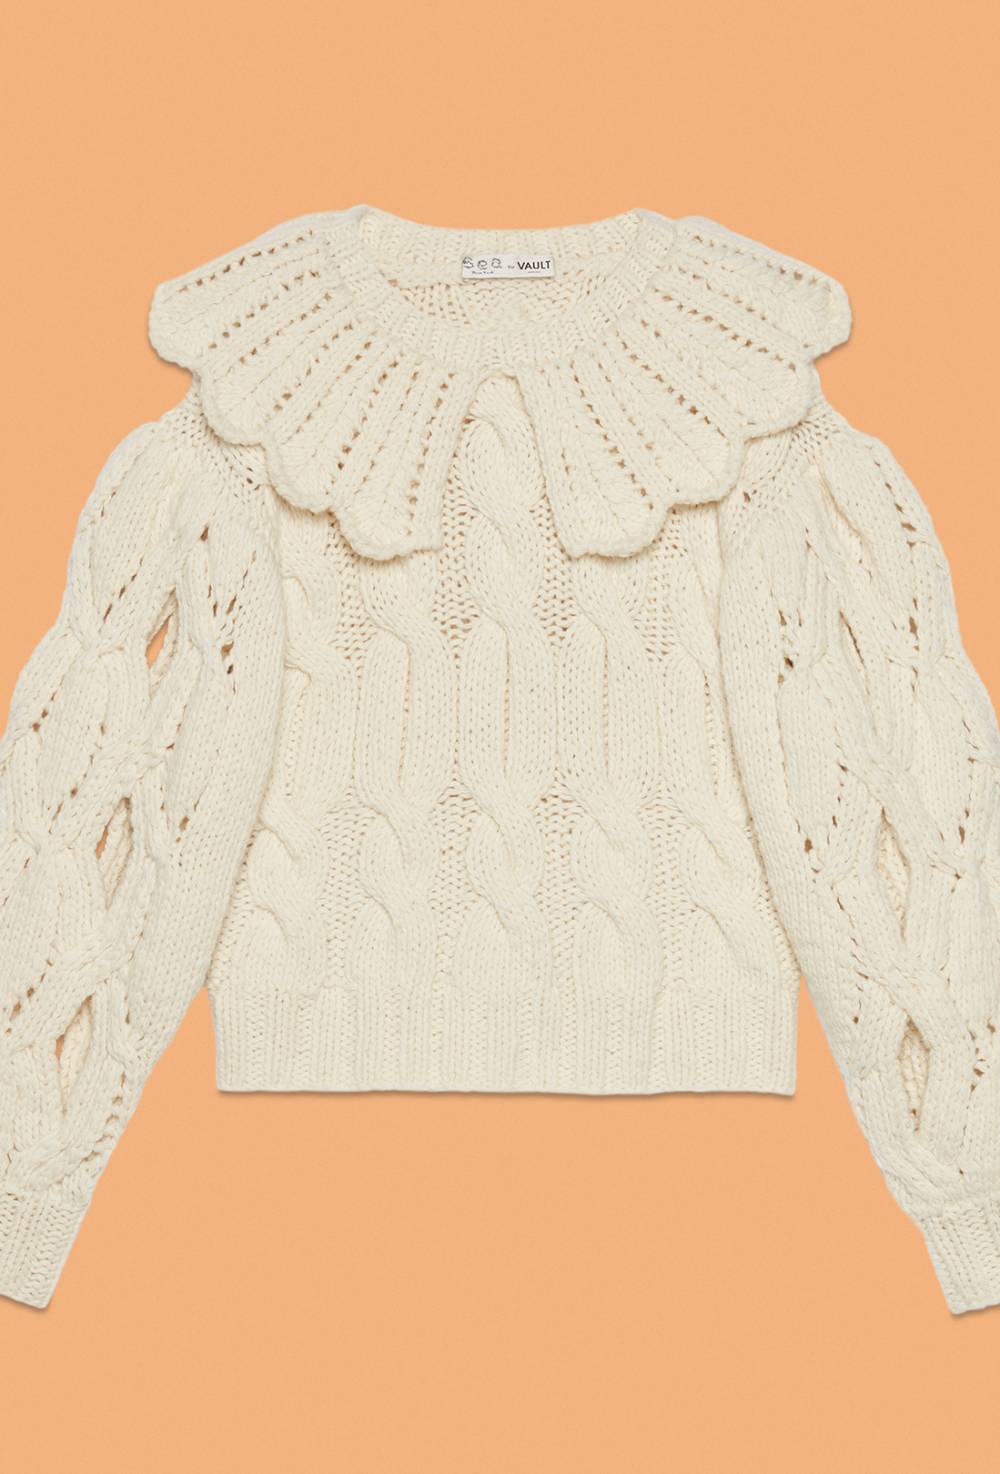 Chamonix sweater by Sea image #1